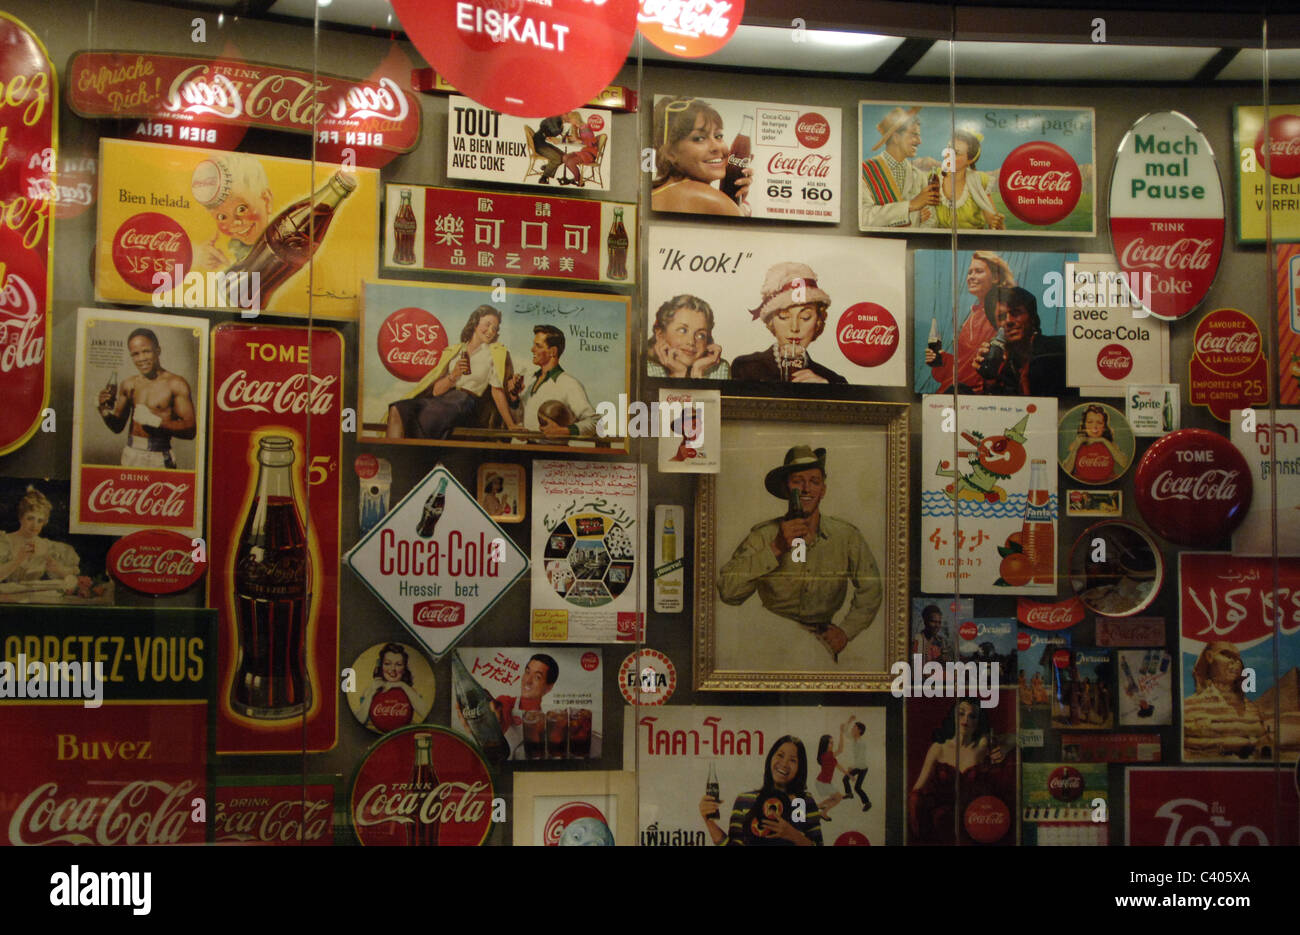 Le monde de Coca-Cola. Exposition permanente présentant l'histoire de The Coca-Cola Company. Ancienne publicité pour le coke. Atlanta. USA. Banque D'Images